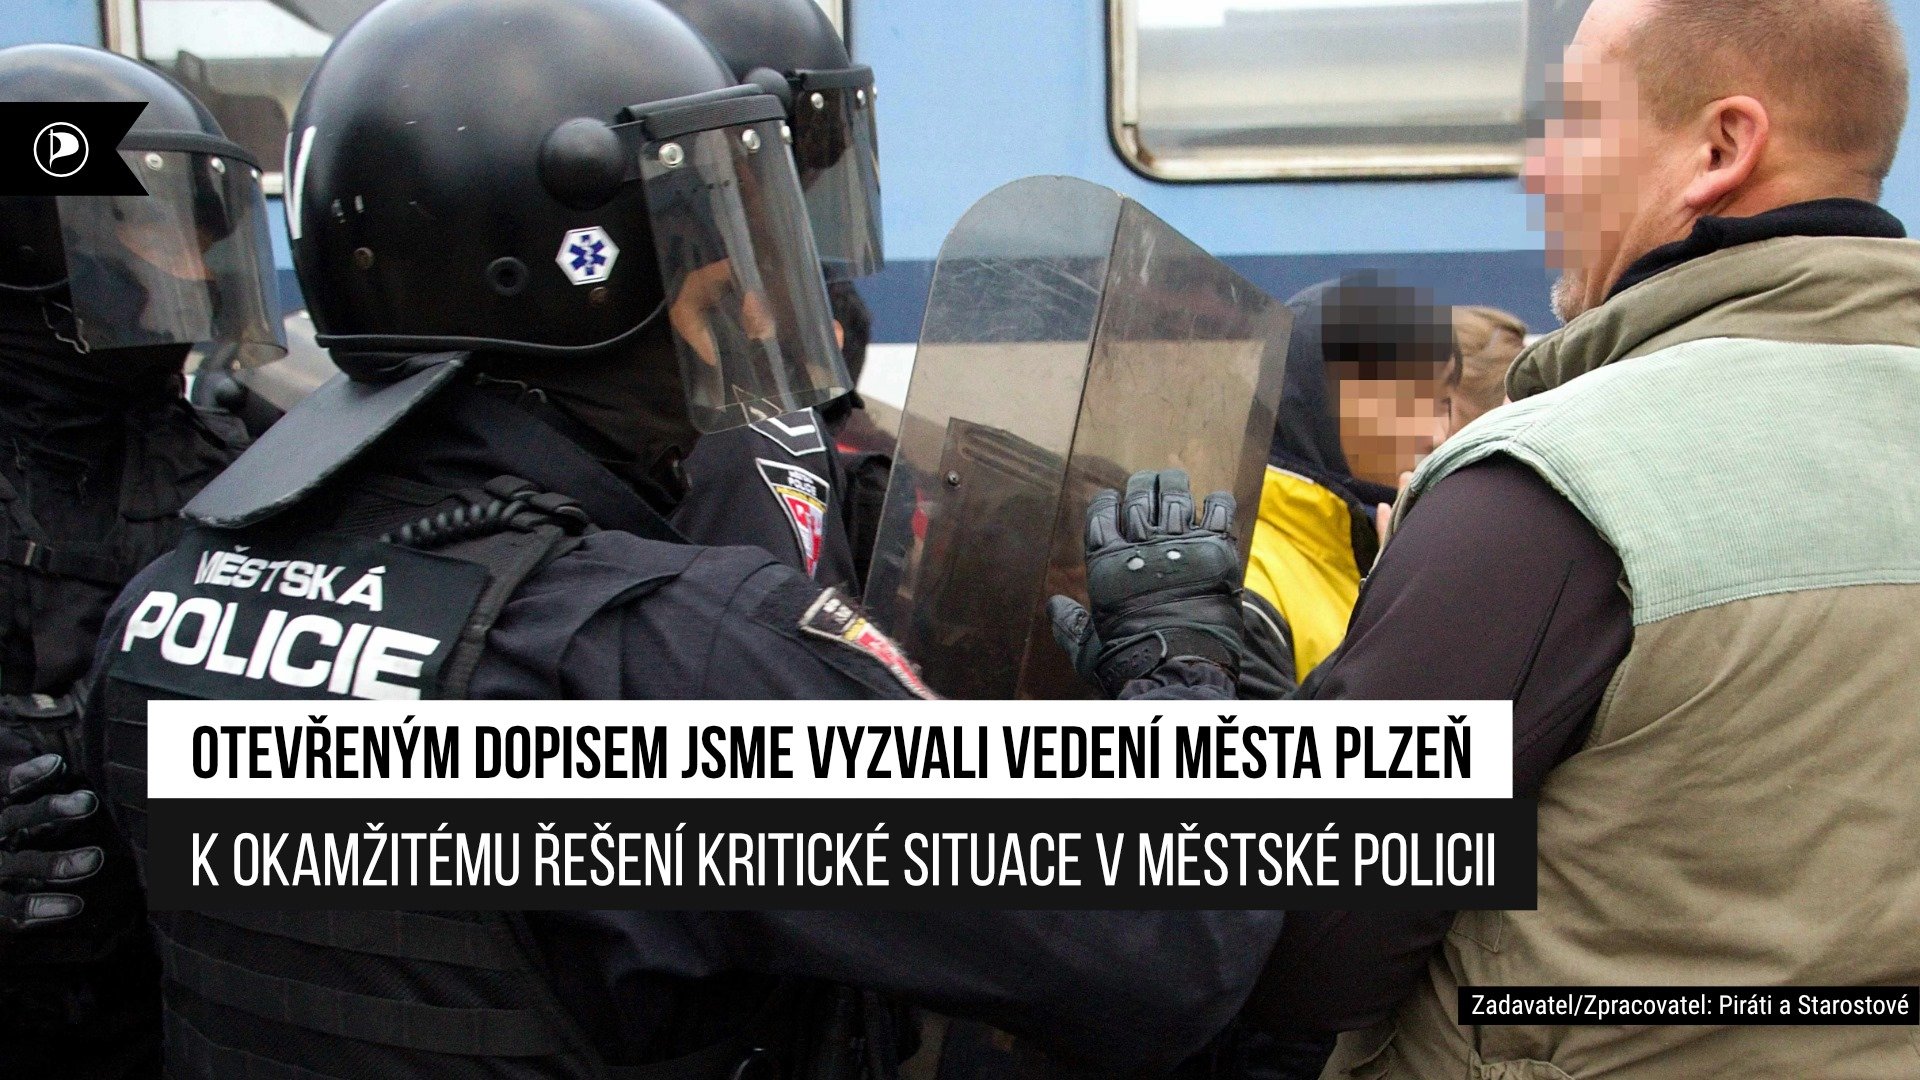 Piráti otevřeným dopisem vyzývají vedení města Plzně k řešení kritické situace v Městské policii Plzeň